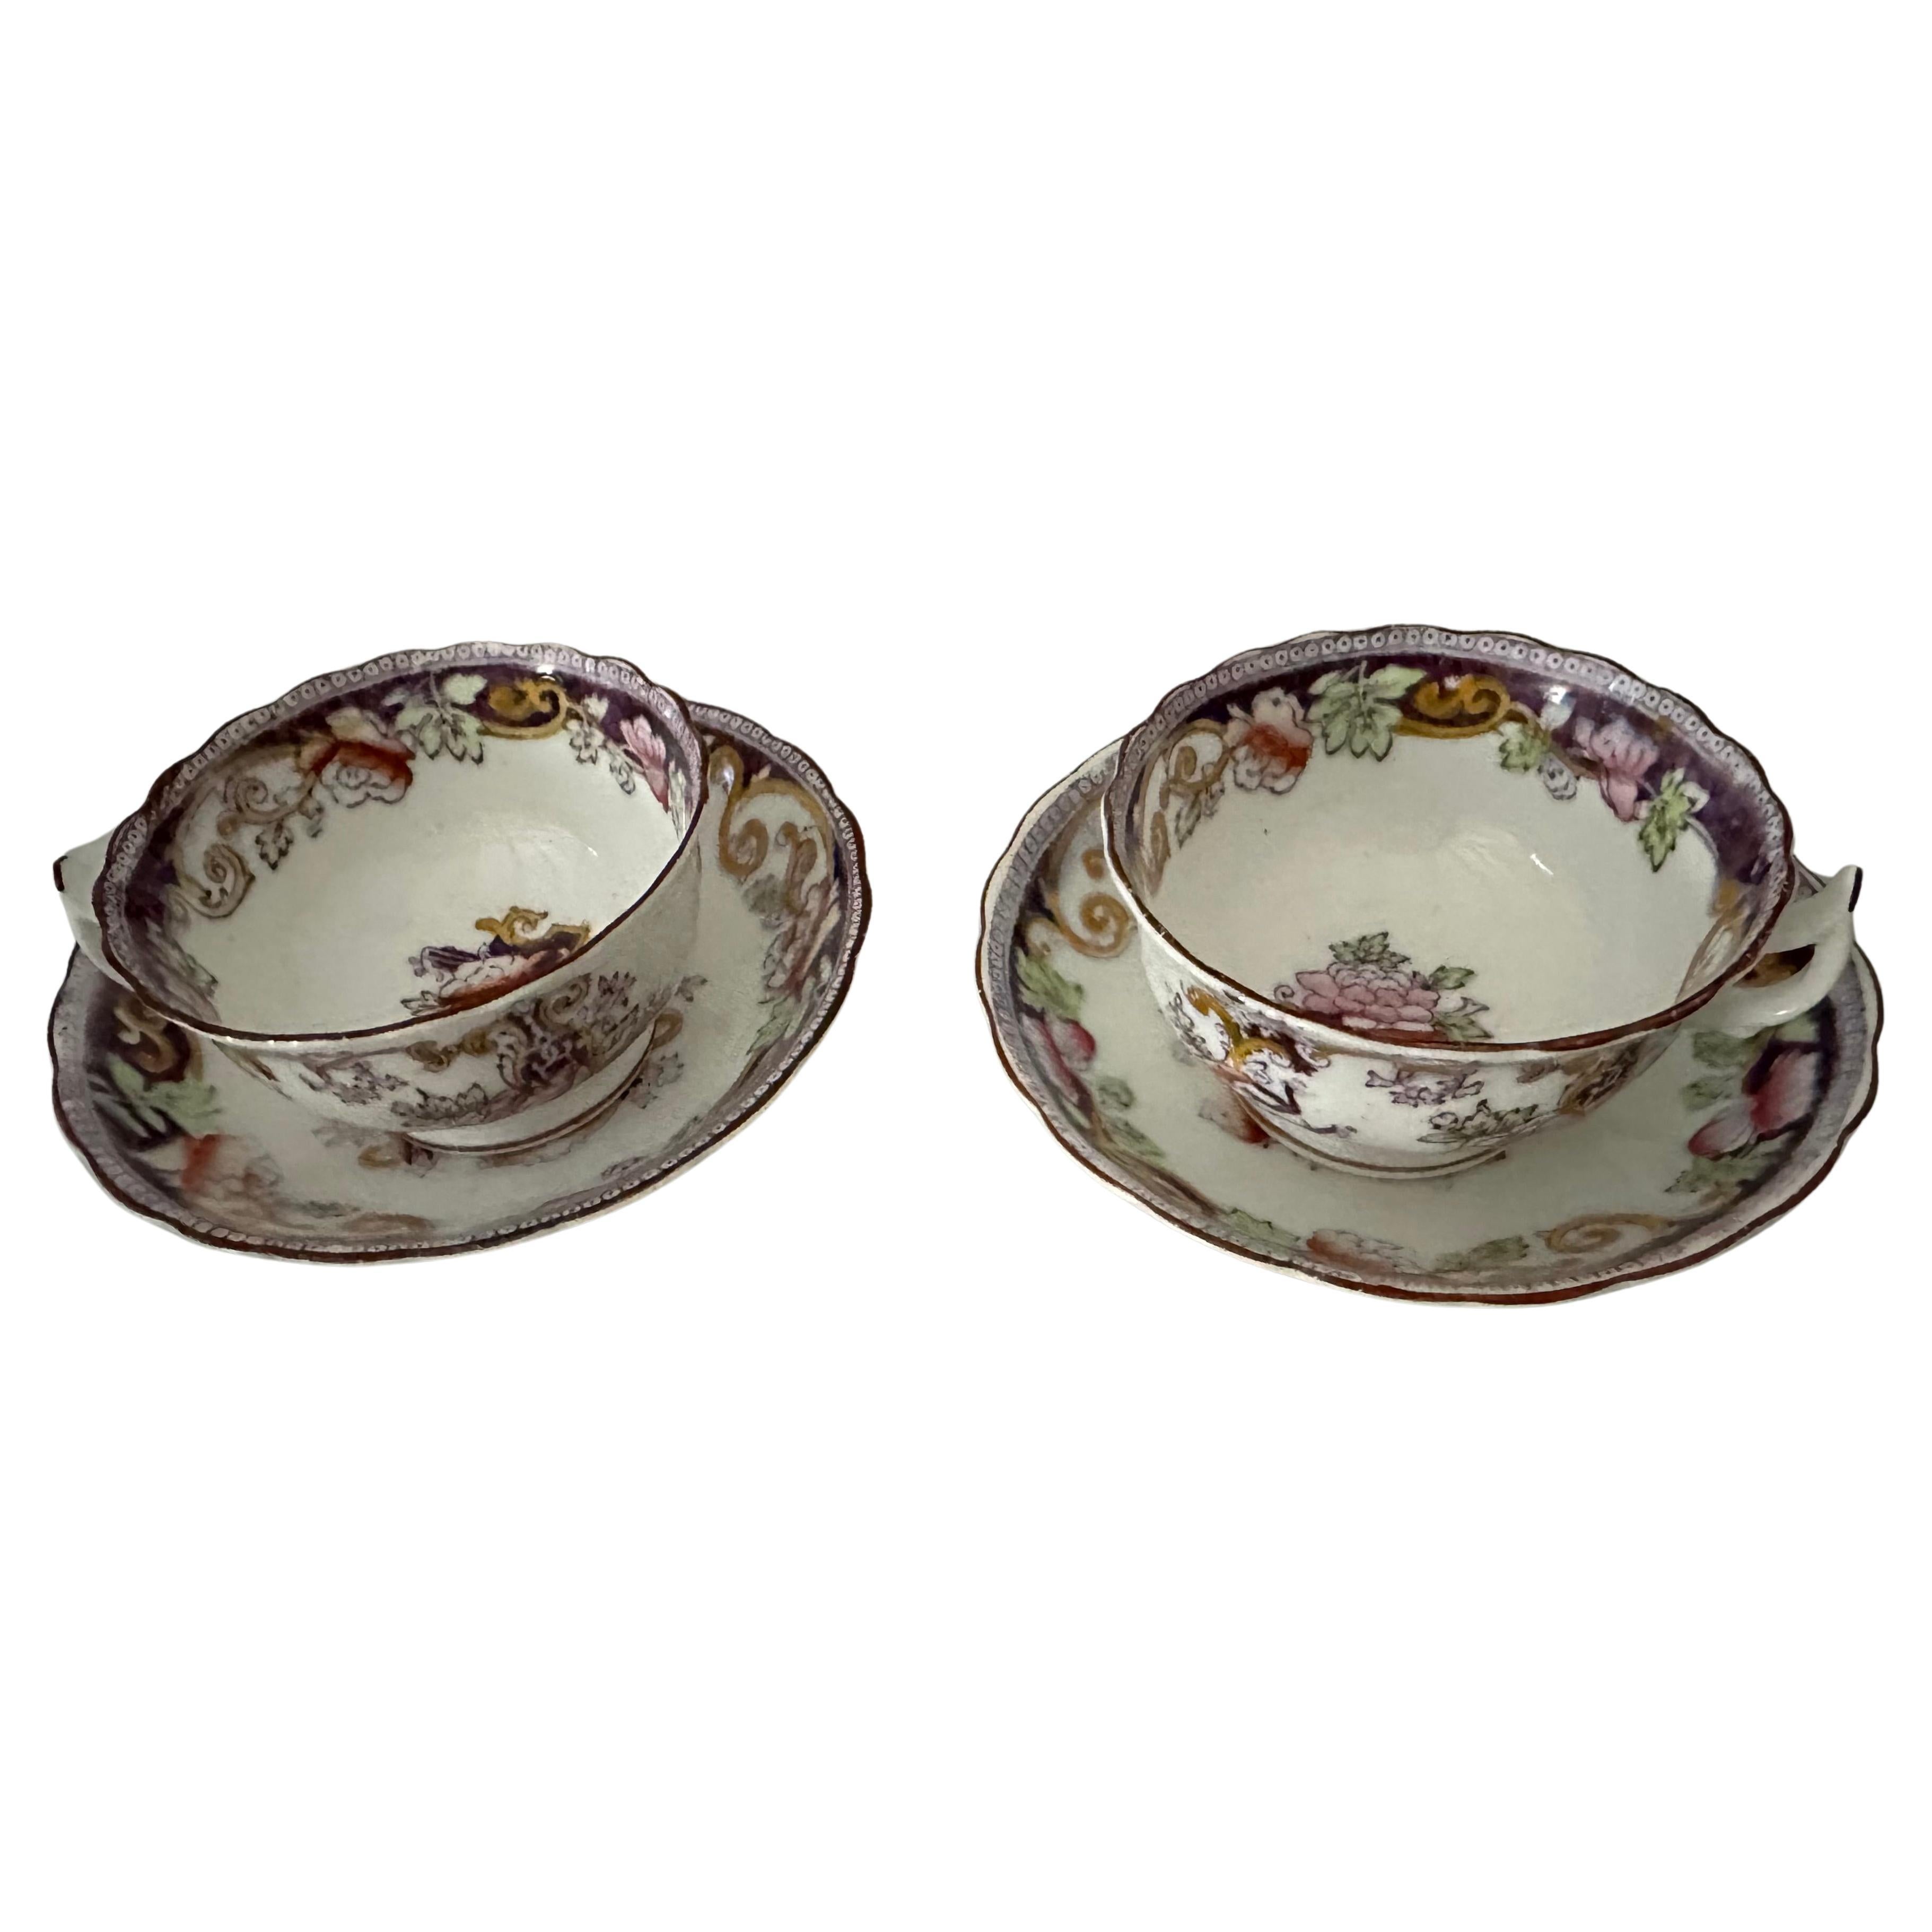 Offrez-vous et offrez à un ami une tasse de thé parfaite avec cette paire de tasses et soucoupes en porcelaine de Chine de l'époque victorienne 1890.  Les ensembles sont ornés d'un violet royal avec des motifs floraux et des volutes roses, vertes et